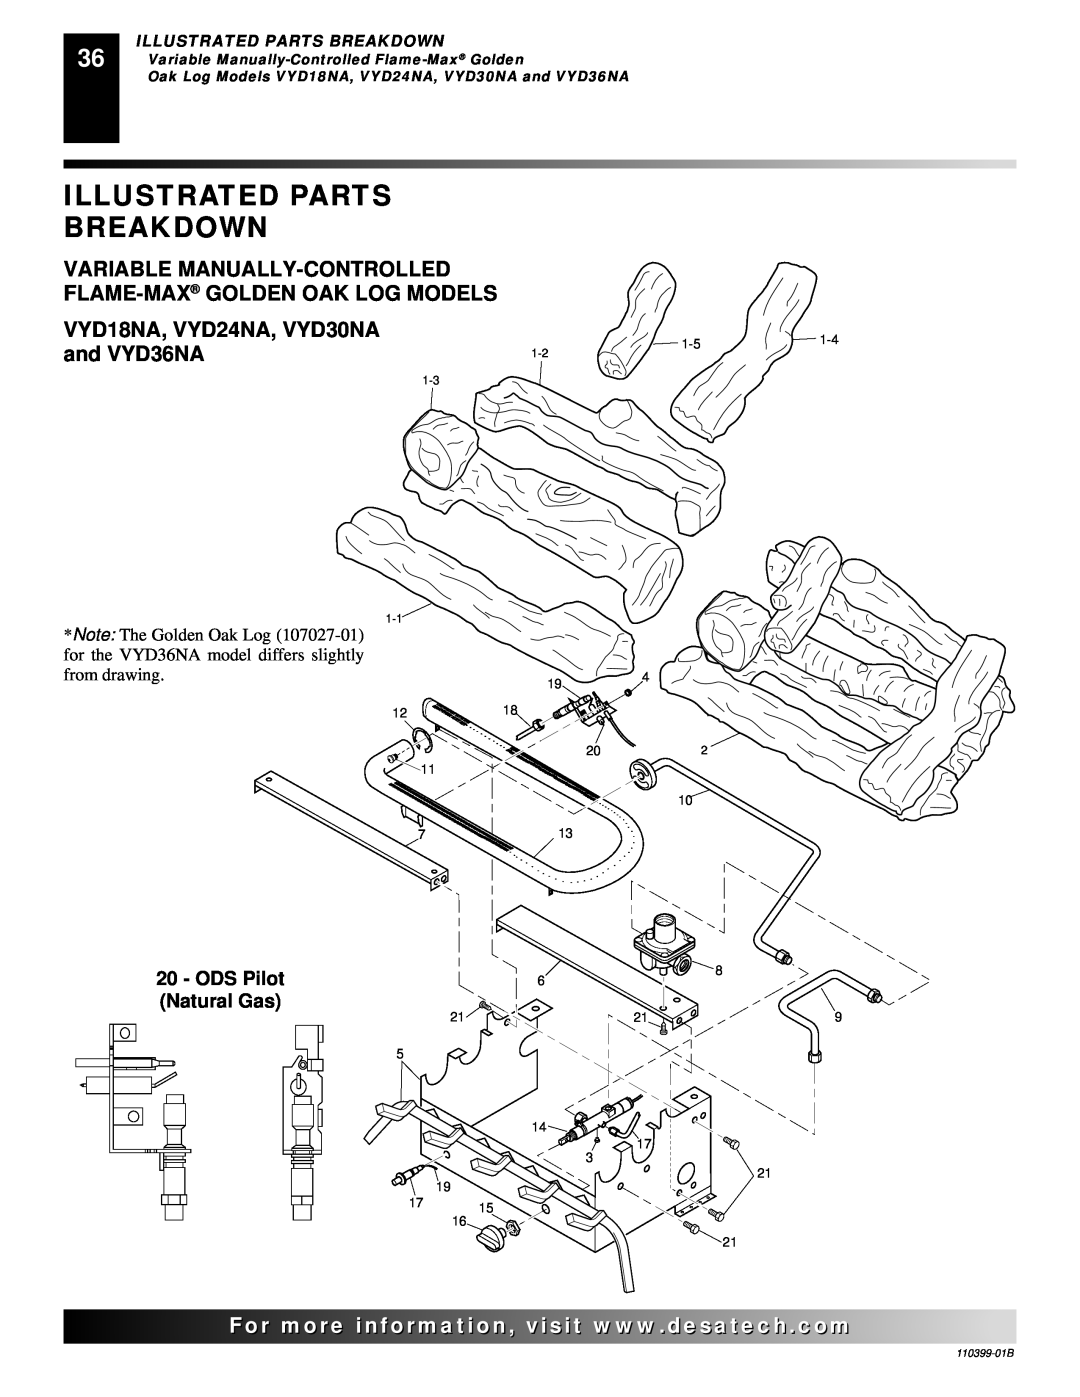 Desa FLAME-MAX VintageOak Illustrated Parts, Breakdown, VYD18NA, VYD24NA, VYD30NA, and VYD36NA, Natural Gas, ODS Pilot 